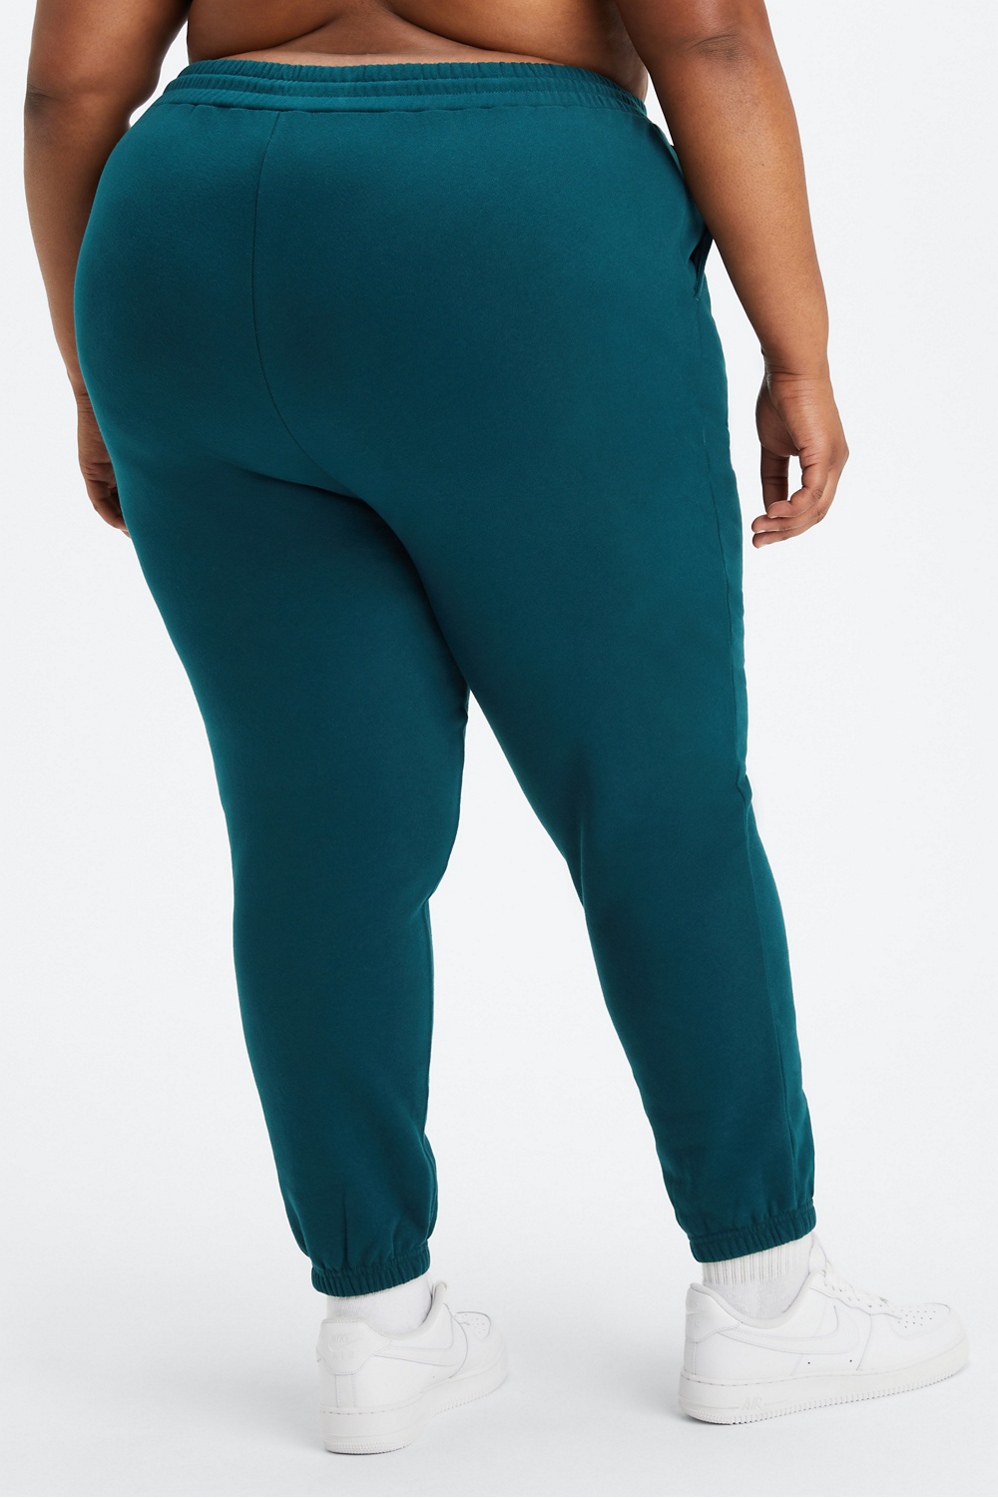 Fabletics Tropical Multi Color Teal Active Pants Size 3X (Plus) - 52% off